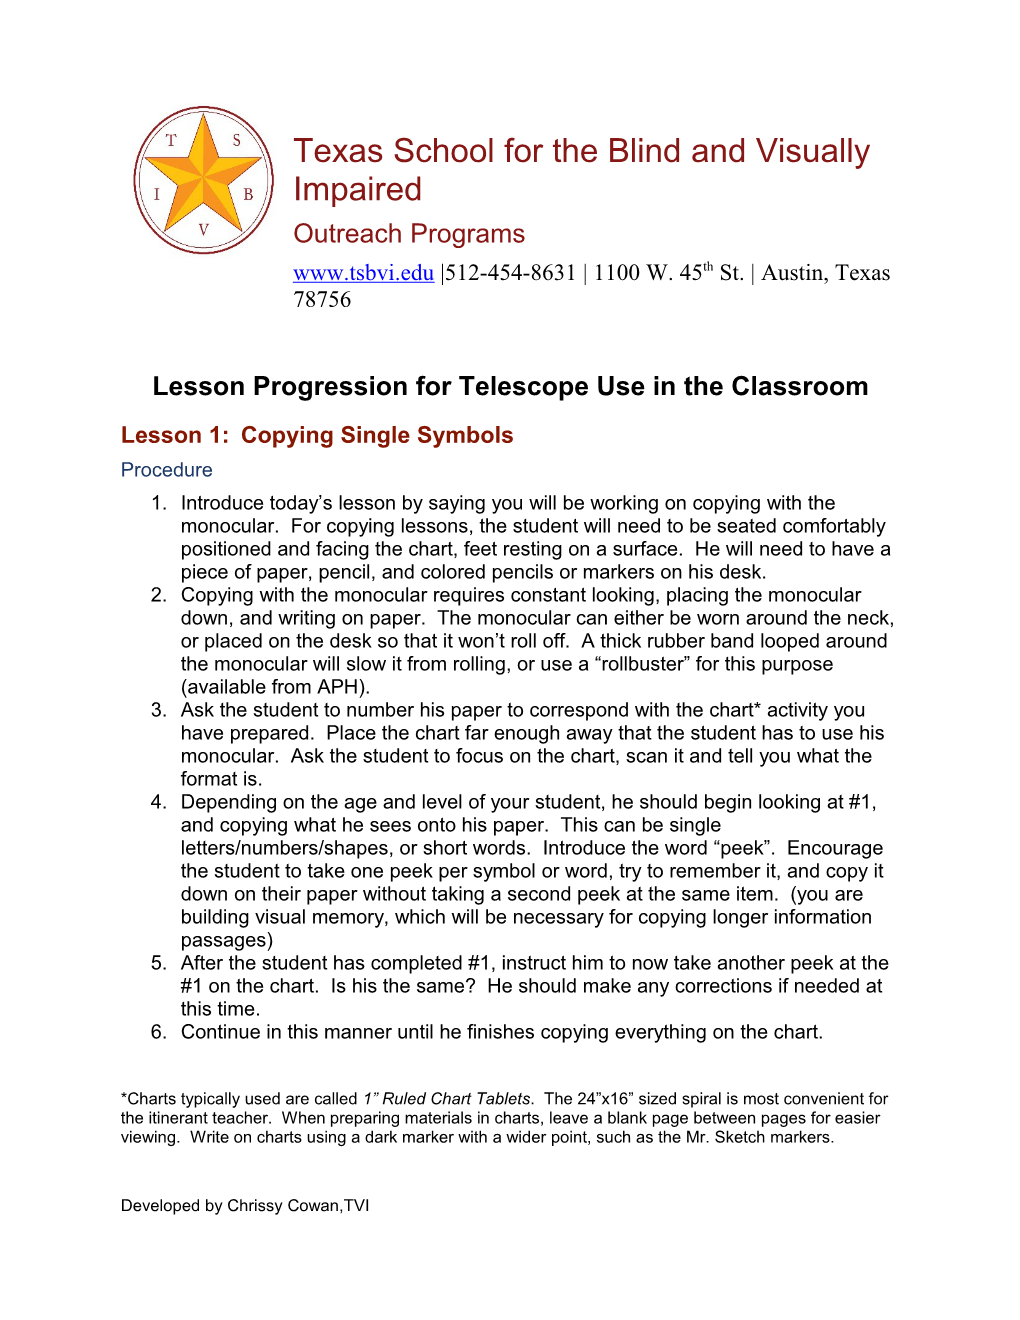 Lesson Progression for Telescope Use in the Classroom